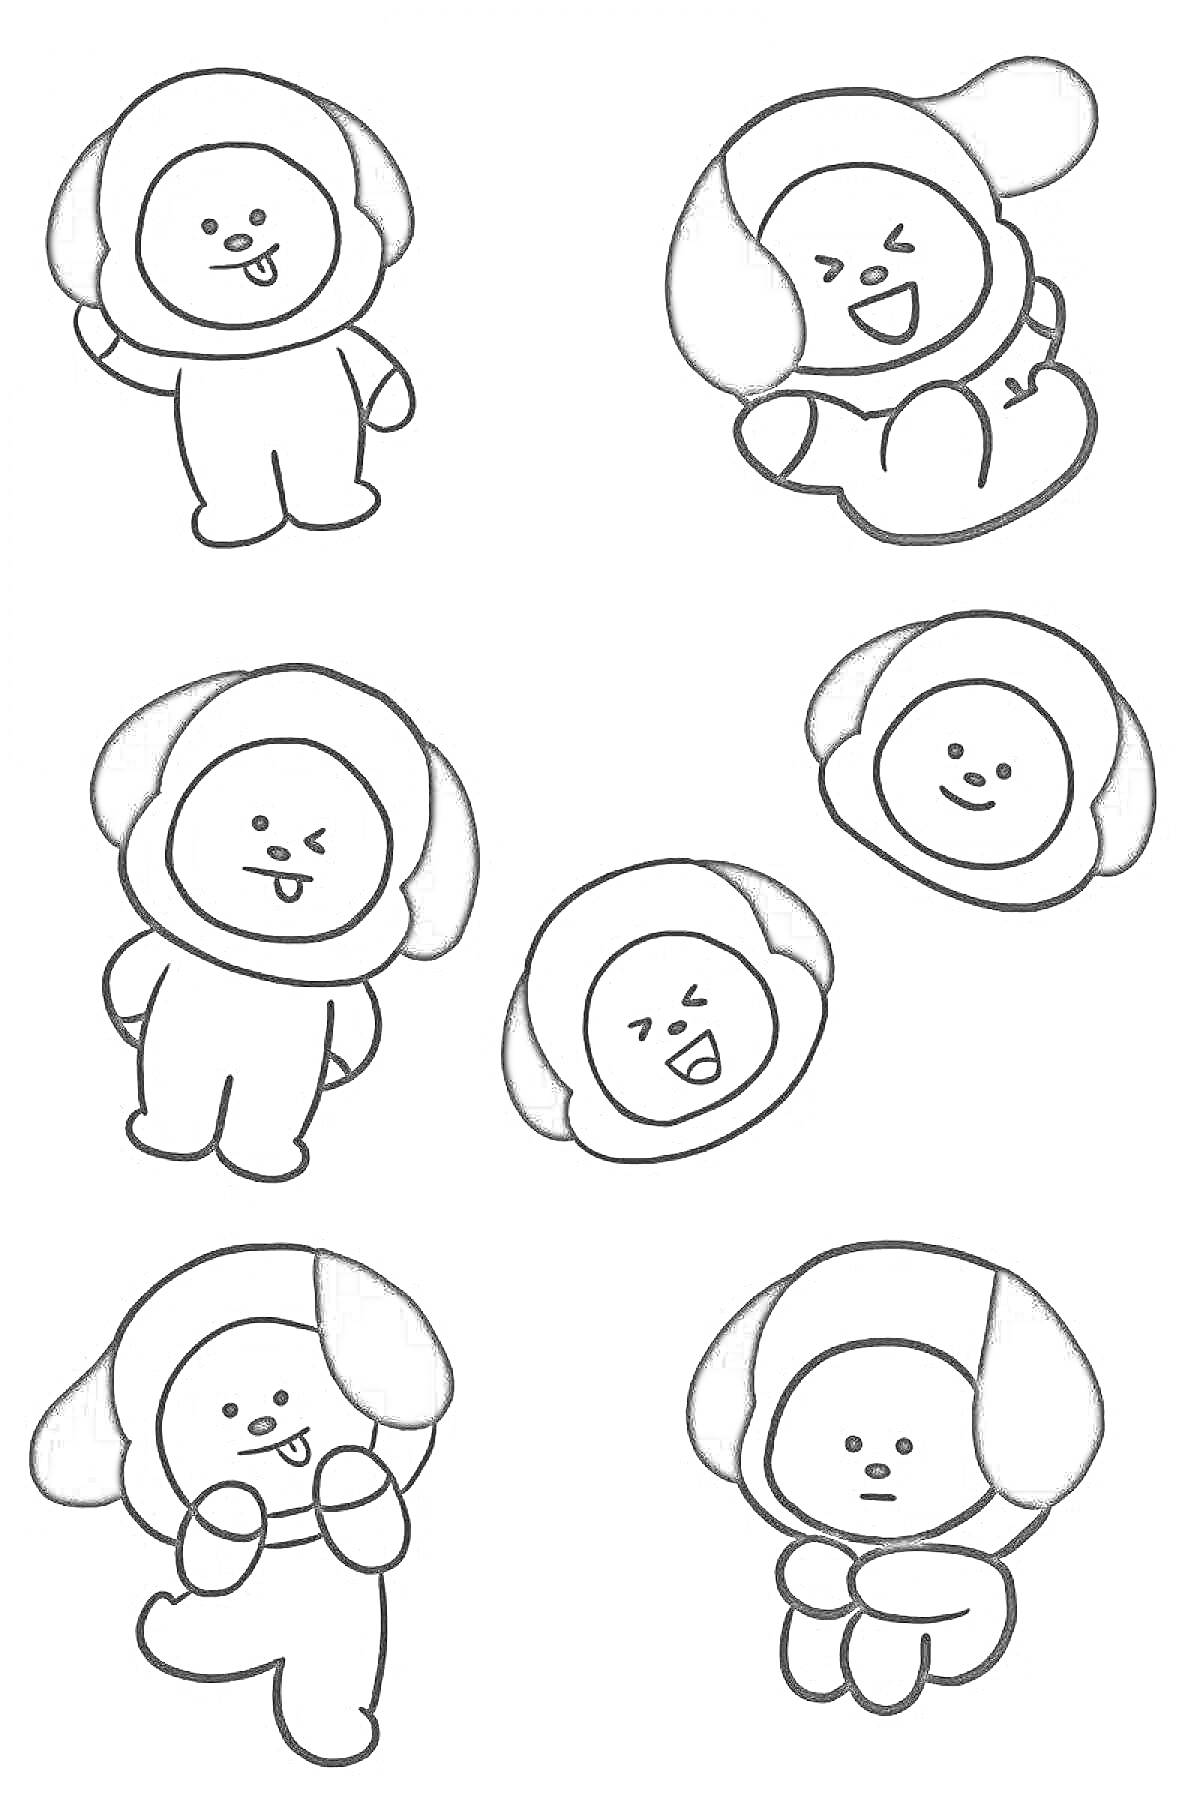 Раскраска Симпатичные игрушки-собаки с разными выражениями лиц